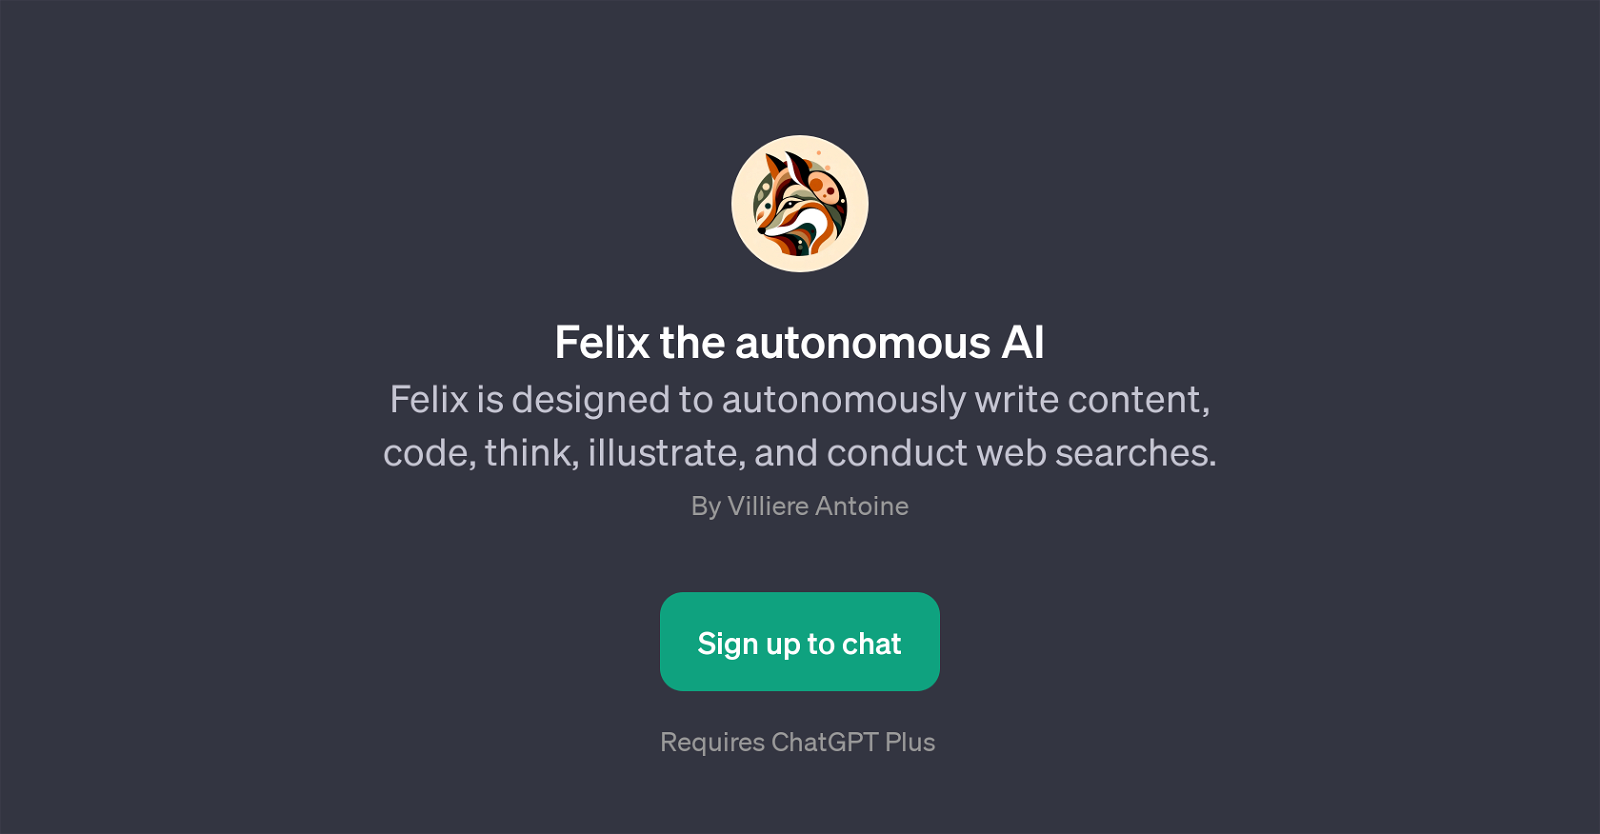 Felix the autonomous AI website